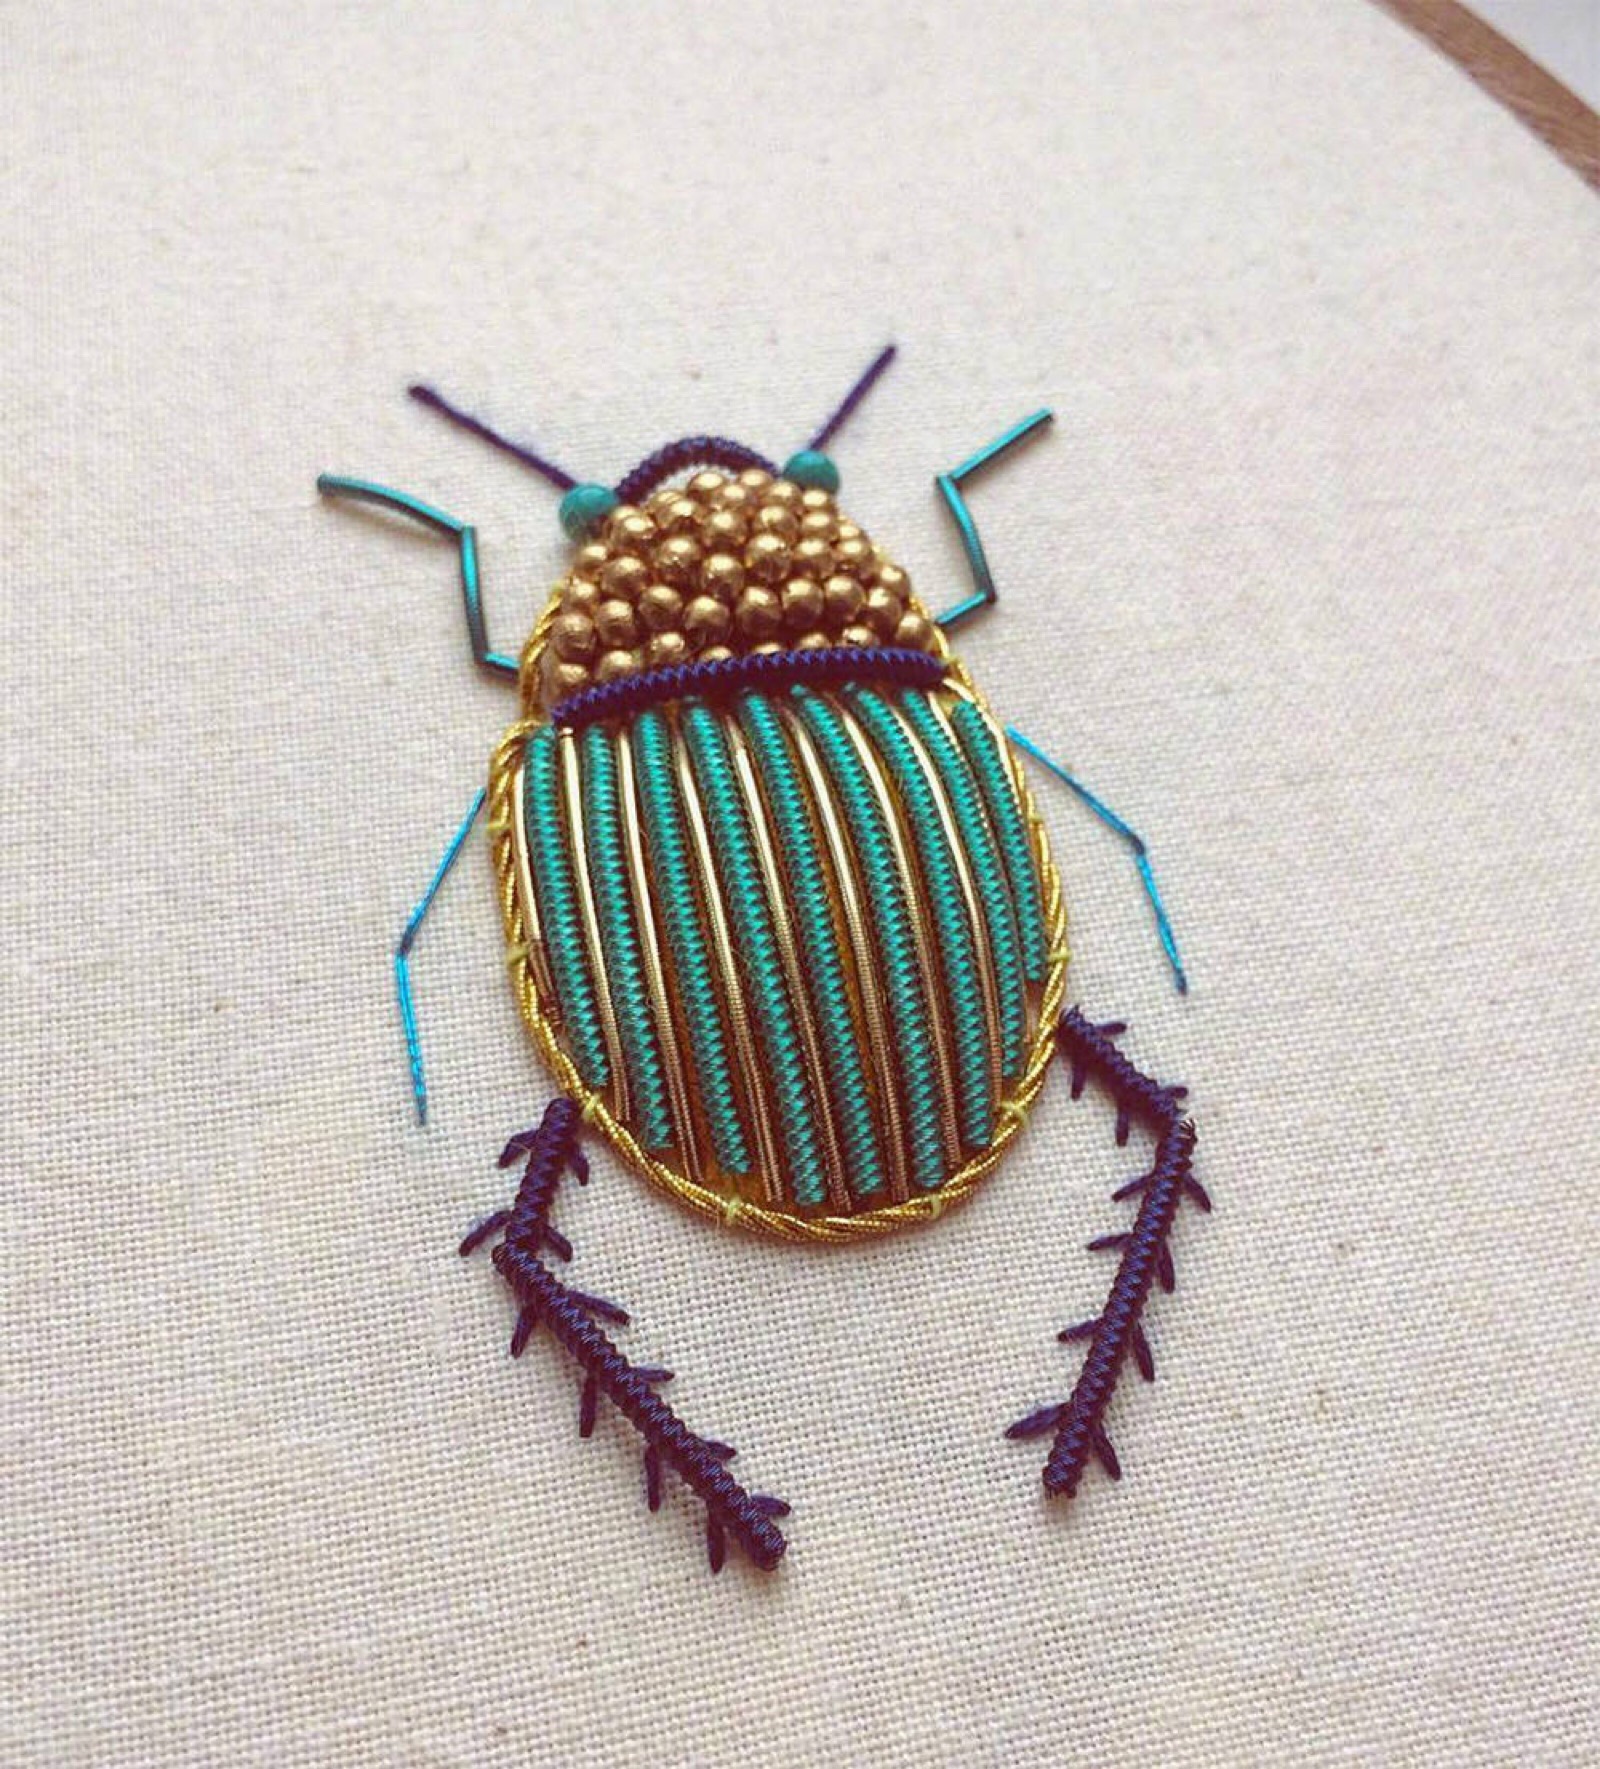 利用金线和小金属制作的昆虫刺绣,艺术家 humayrah bint altaf